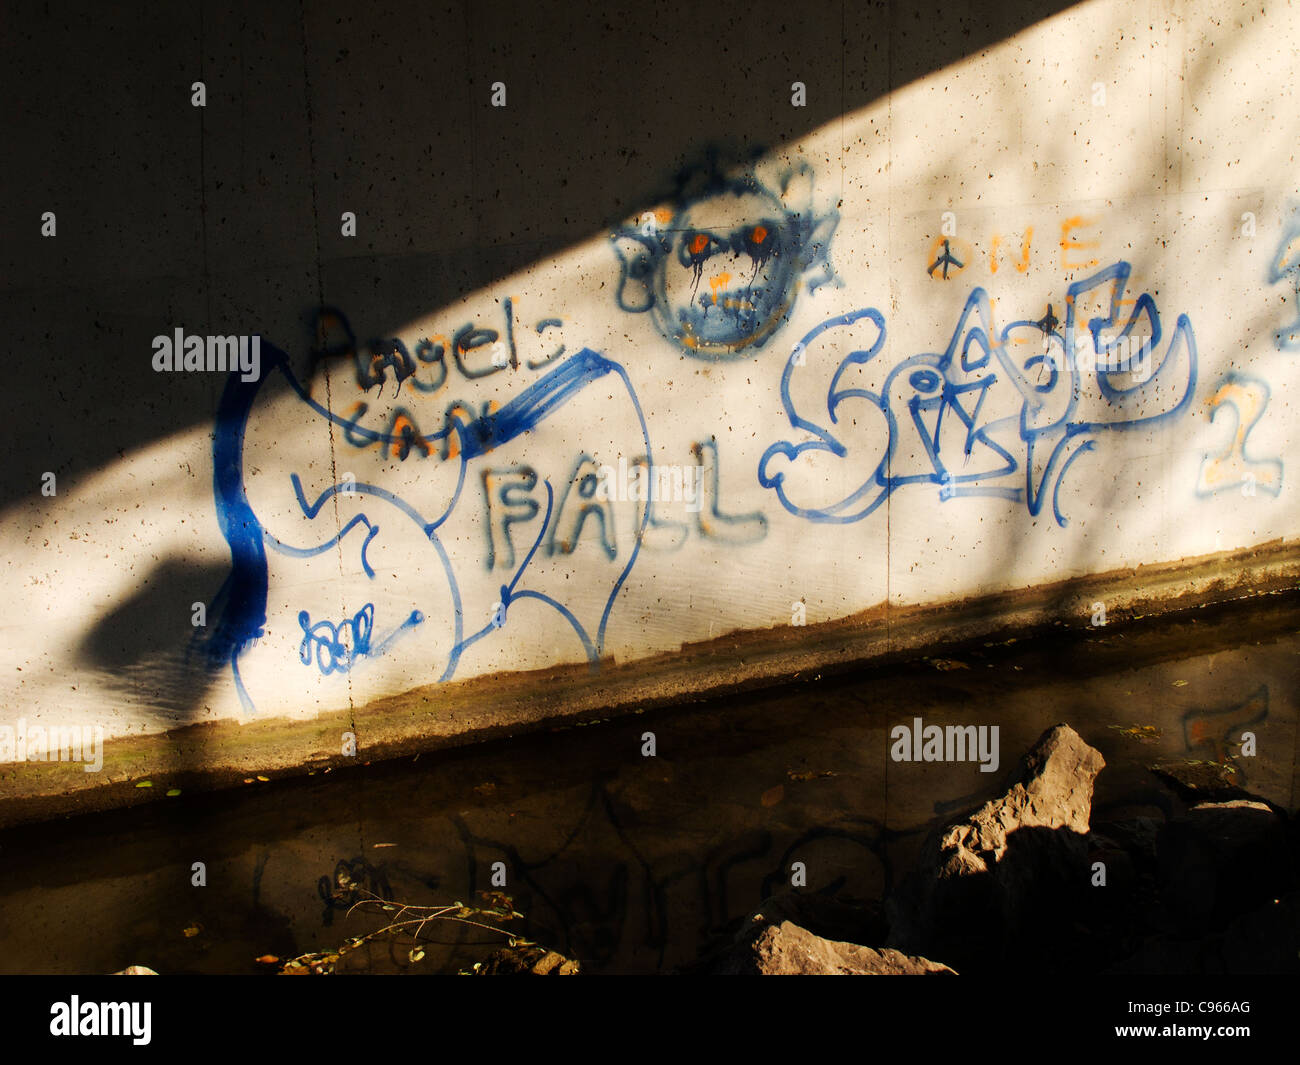 Graffiti on cement wall. Stock Photo